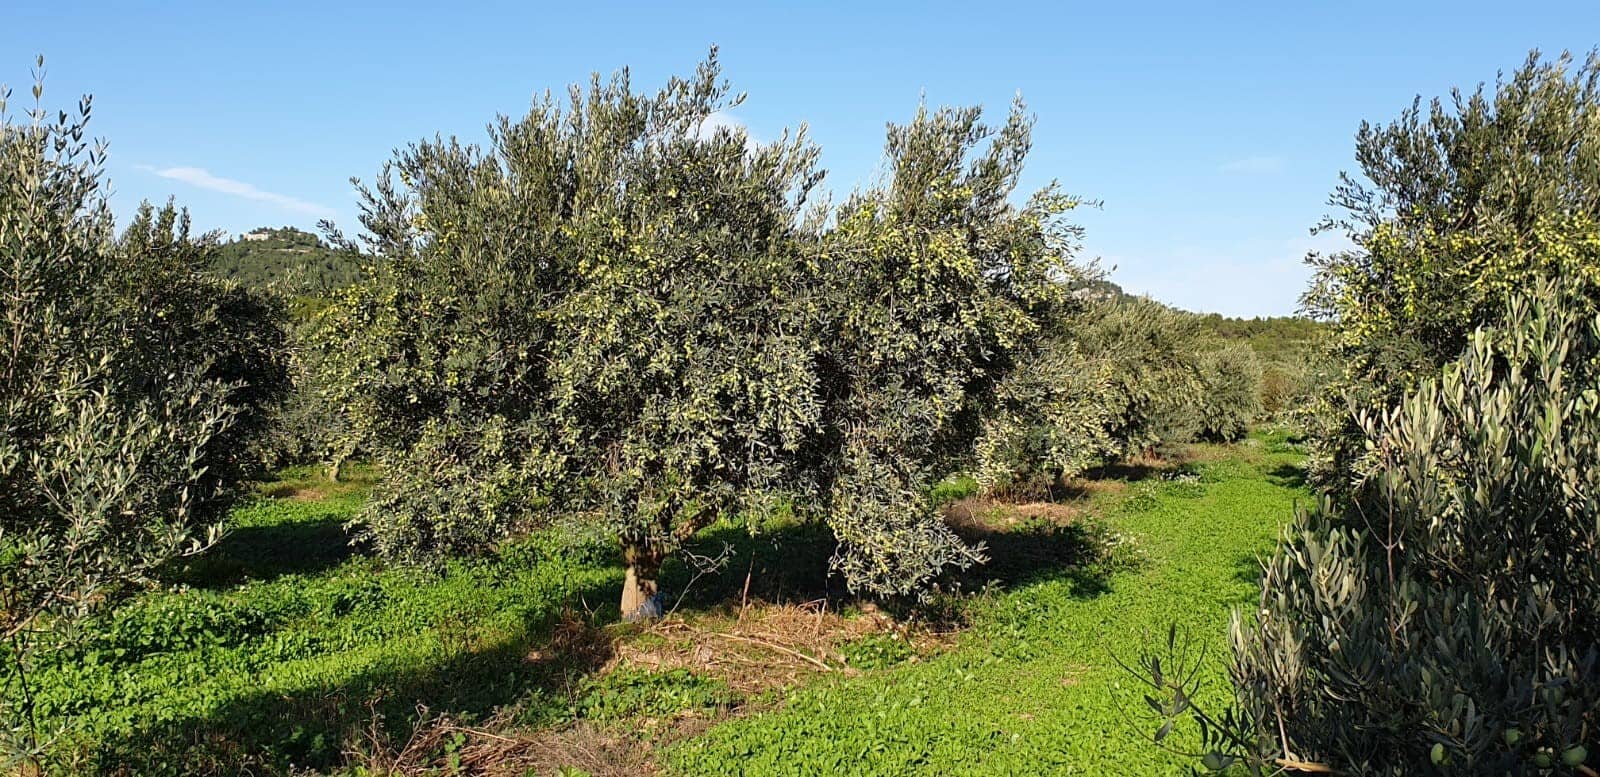 europa-perfiles-produccion-los-mejores-aceites-de-oliva-una-tradicion-familiar-echa raices-en-moulin-de-la-coquille-olive-oil-times